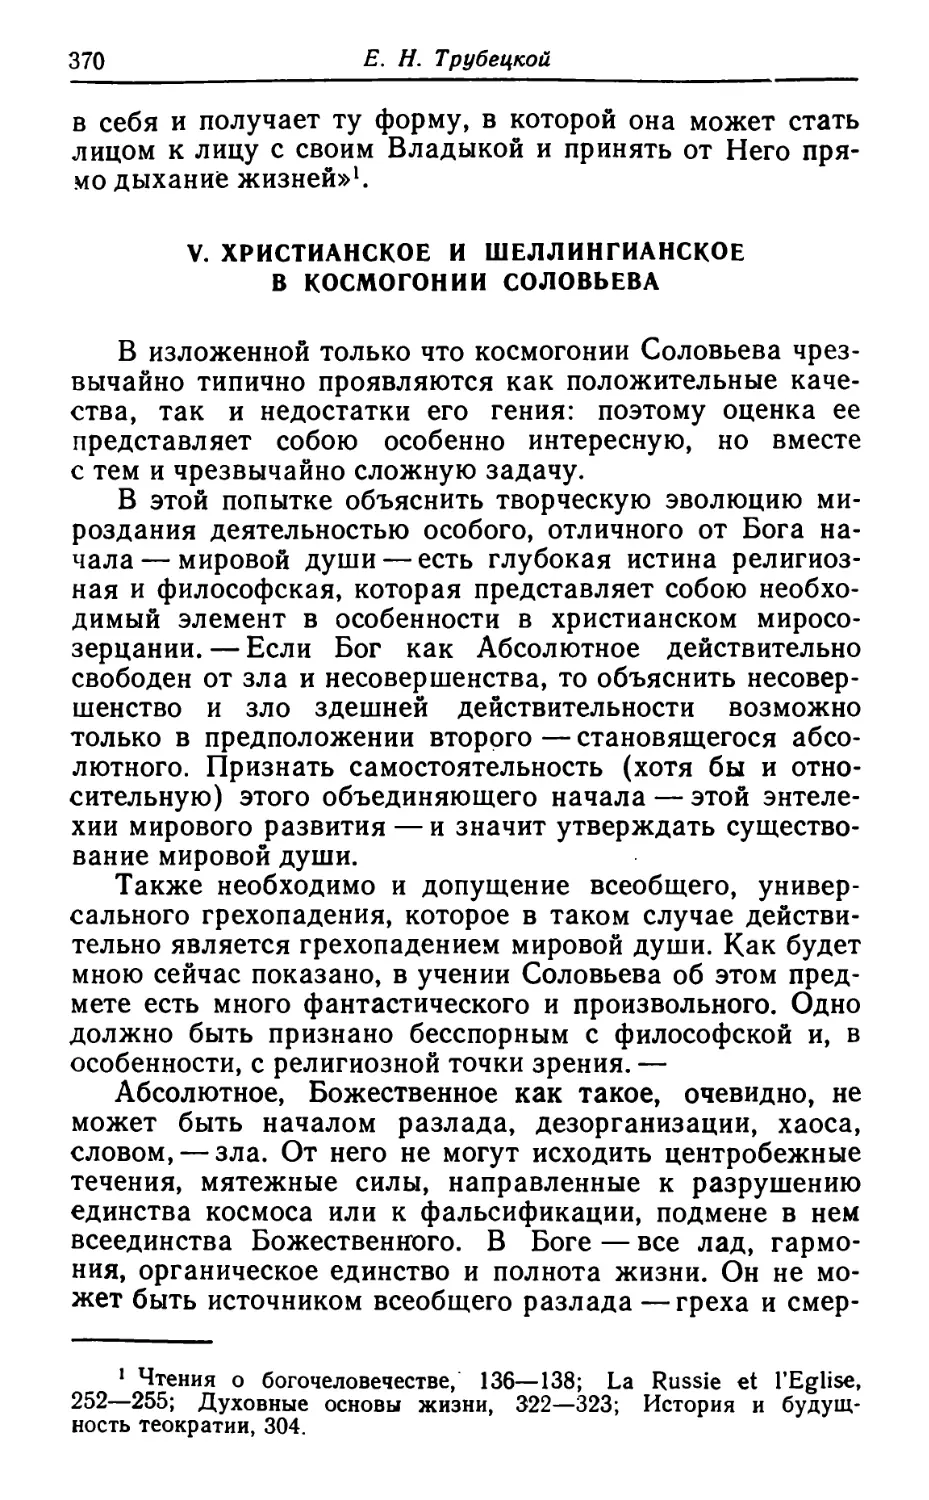 V. Христианское и шеллингианское в космогонии Соловьева